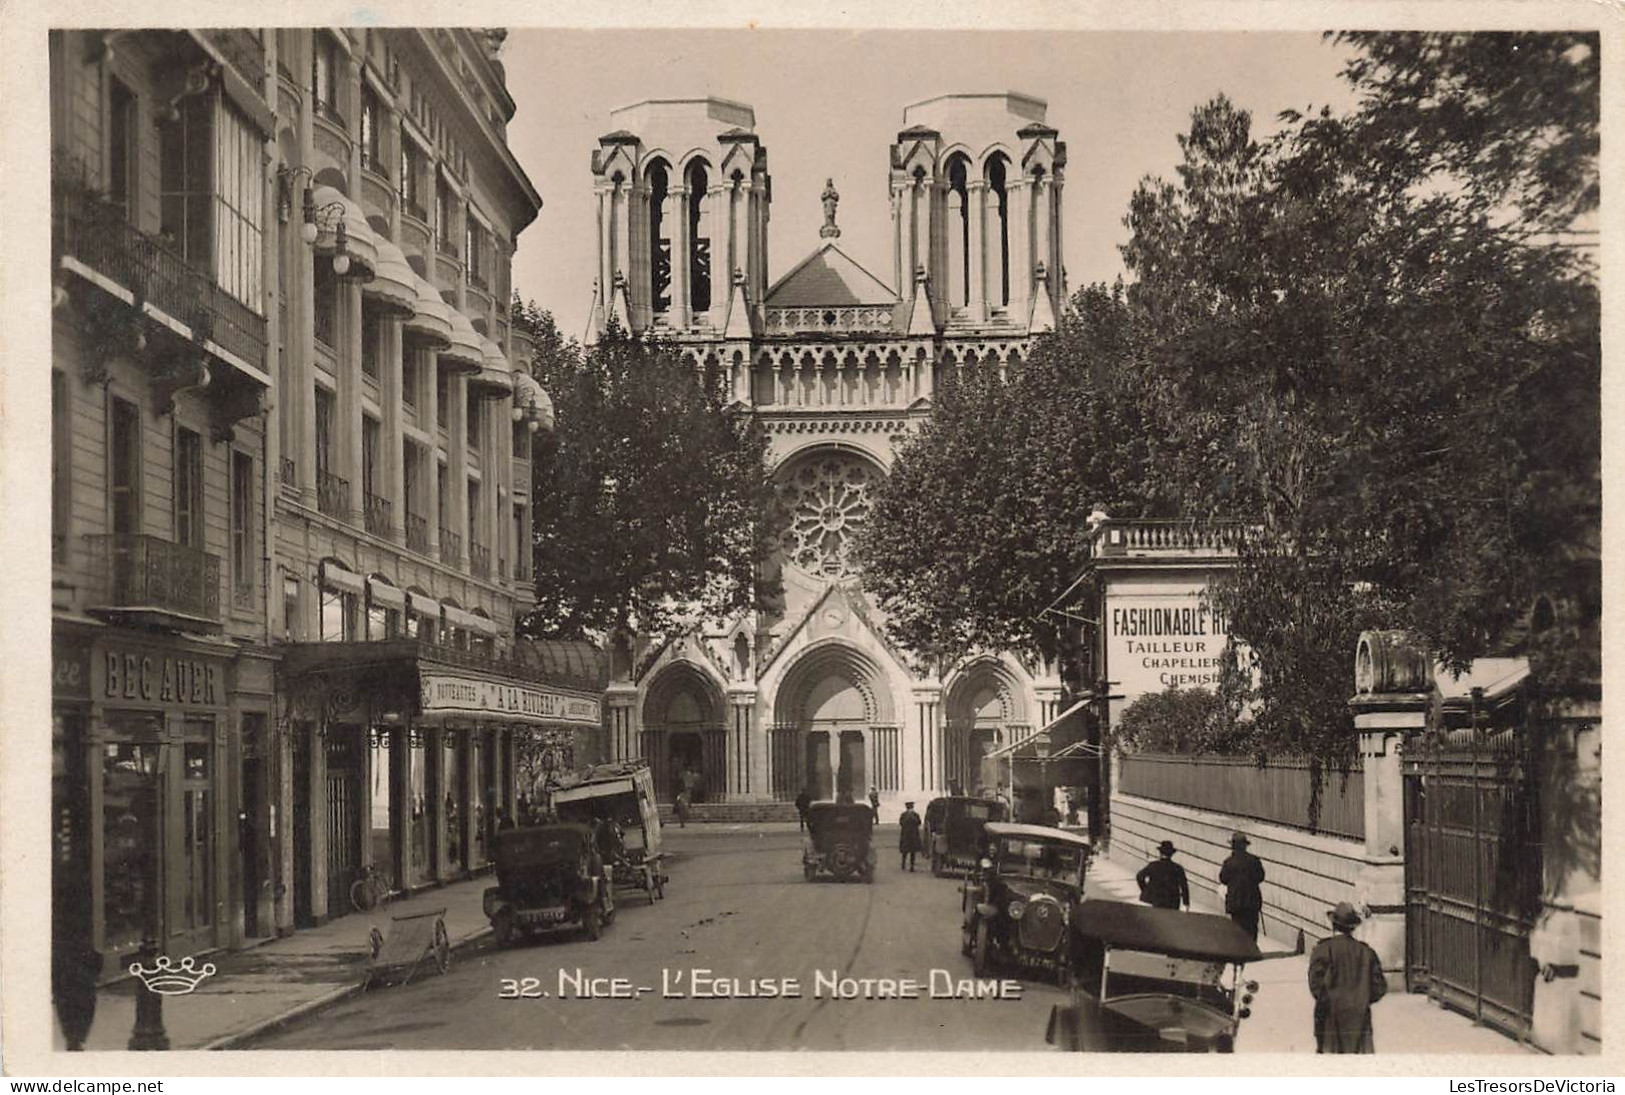 FRANCE - Nice - L'Eglise Notre Dame - Fashionable Tailleur Chapellier - Animé - Carte Postale Ancienne - Monumentos, Edificios